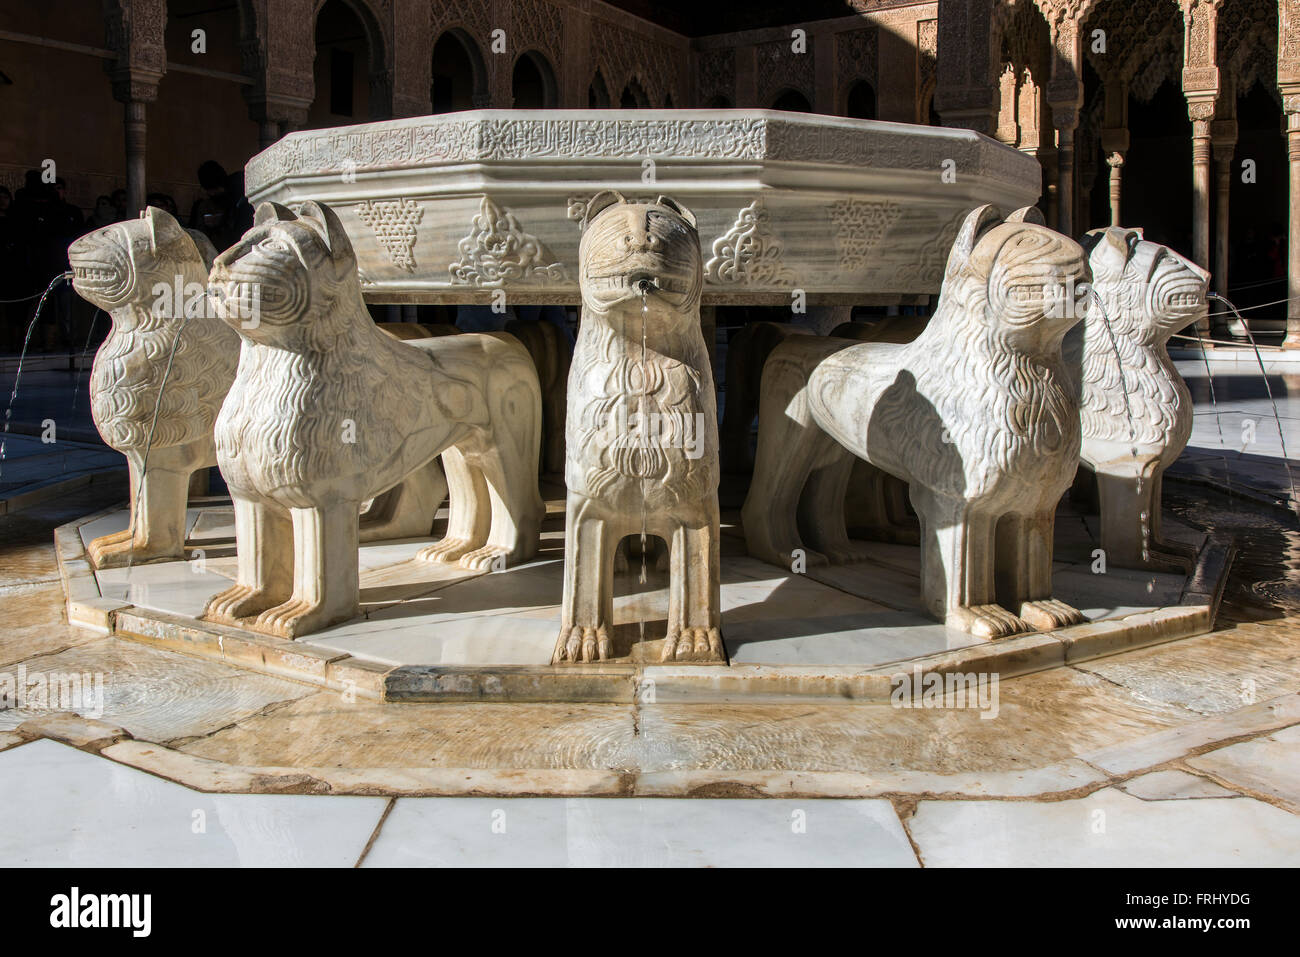 Fontaine de la Cour des Lions, le Palais des Lions, palais de l'Alhambra, Grenade, Andalousie, Espagne Banque D'Images